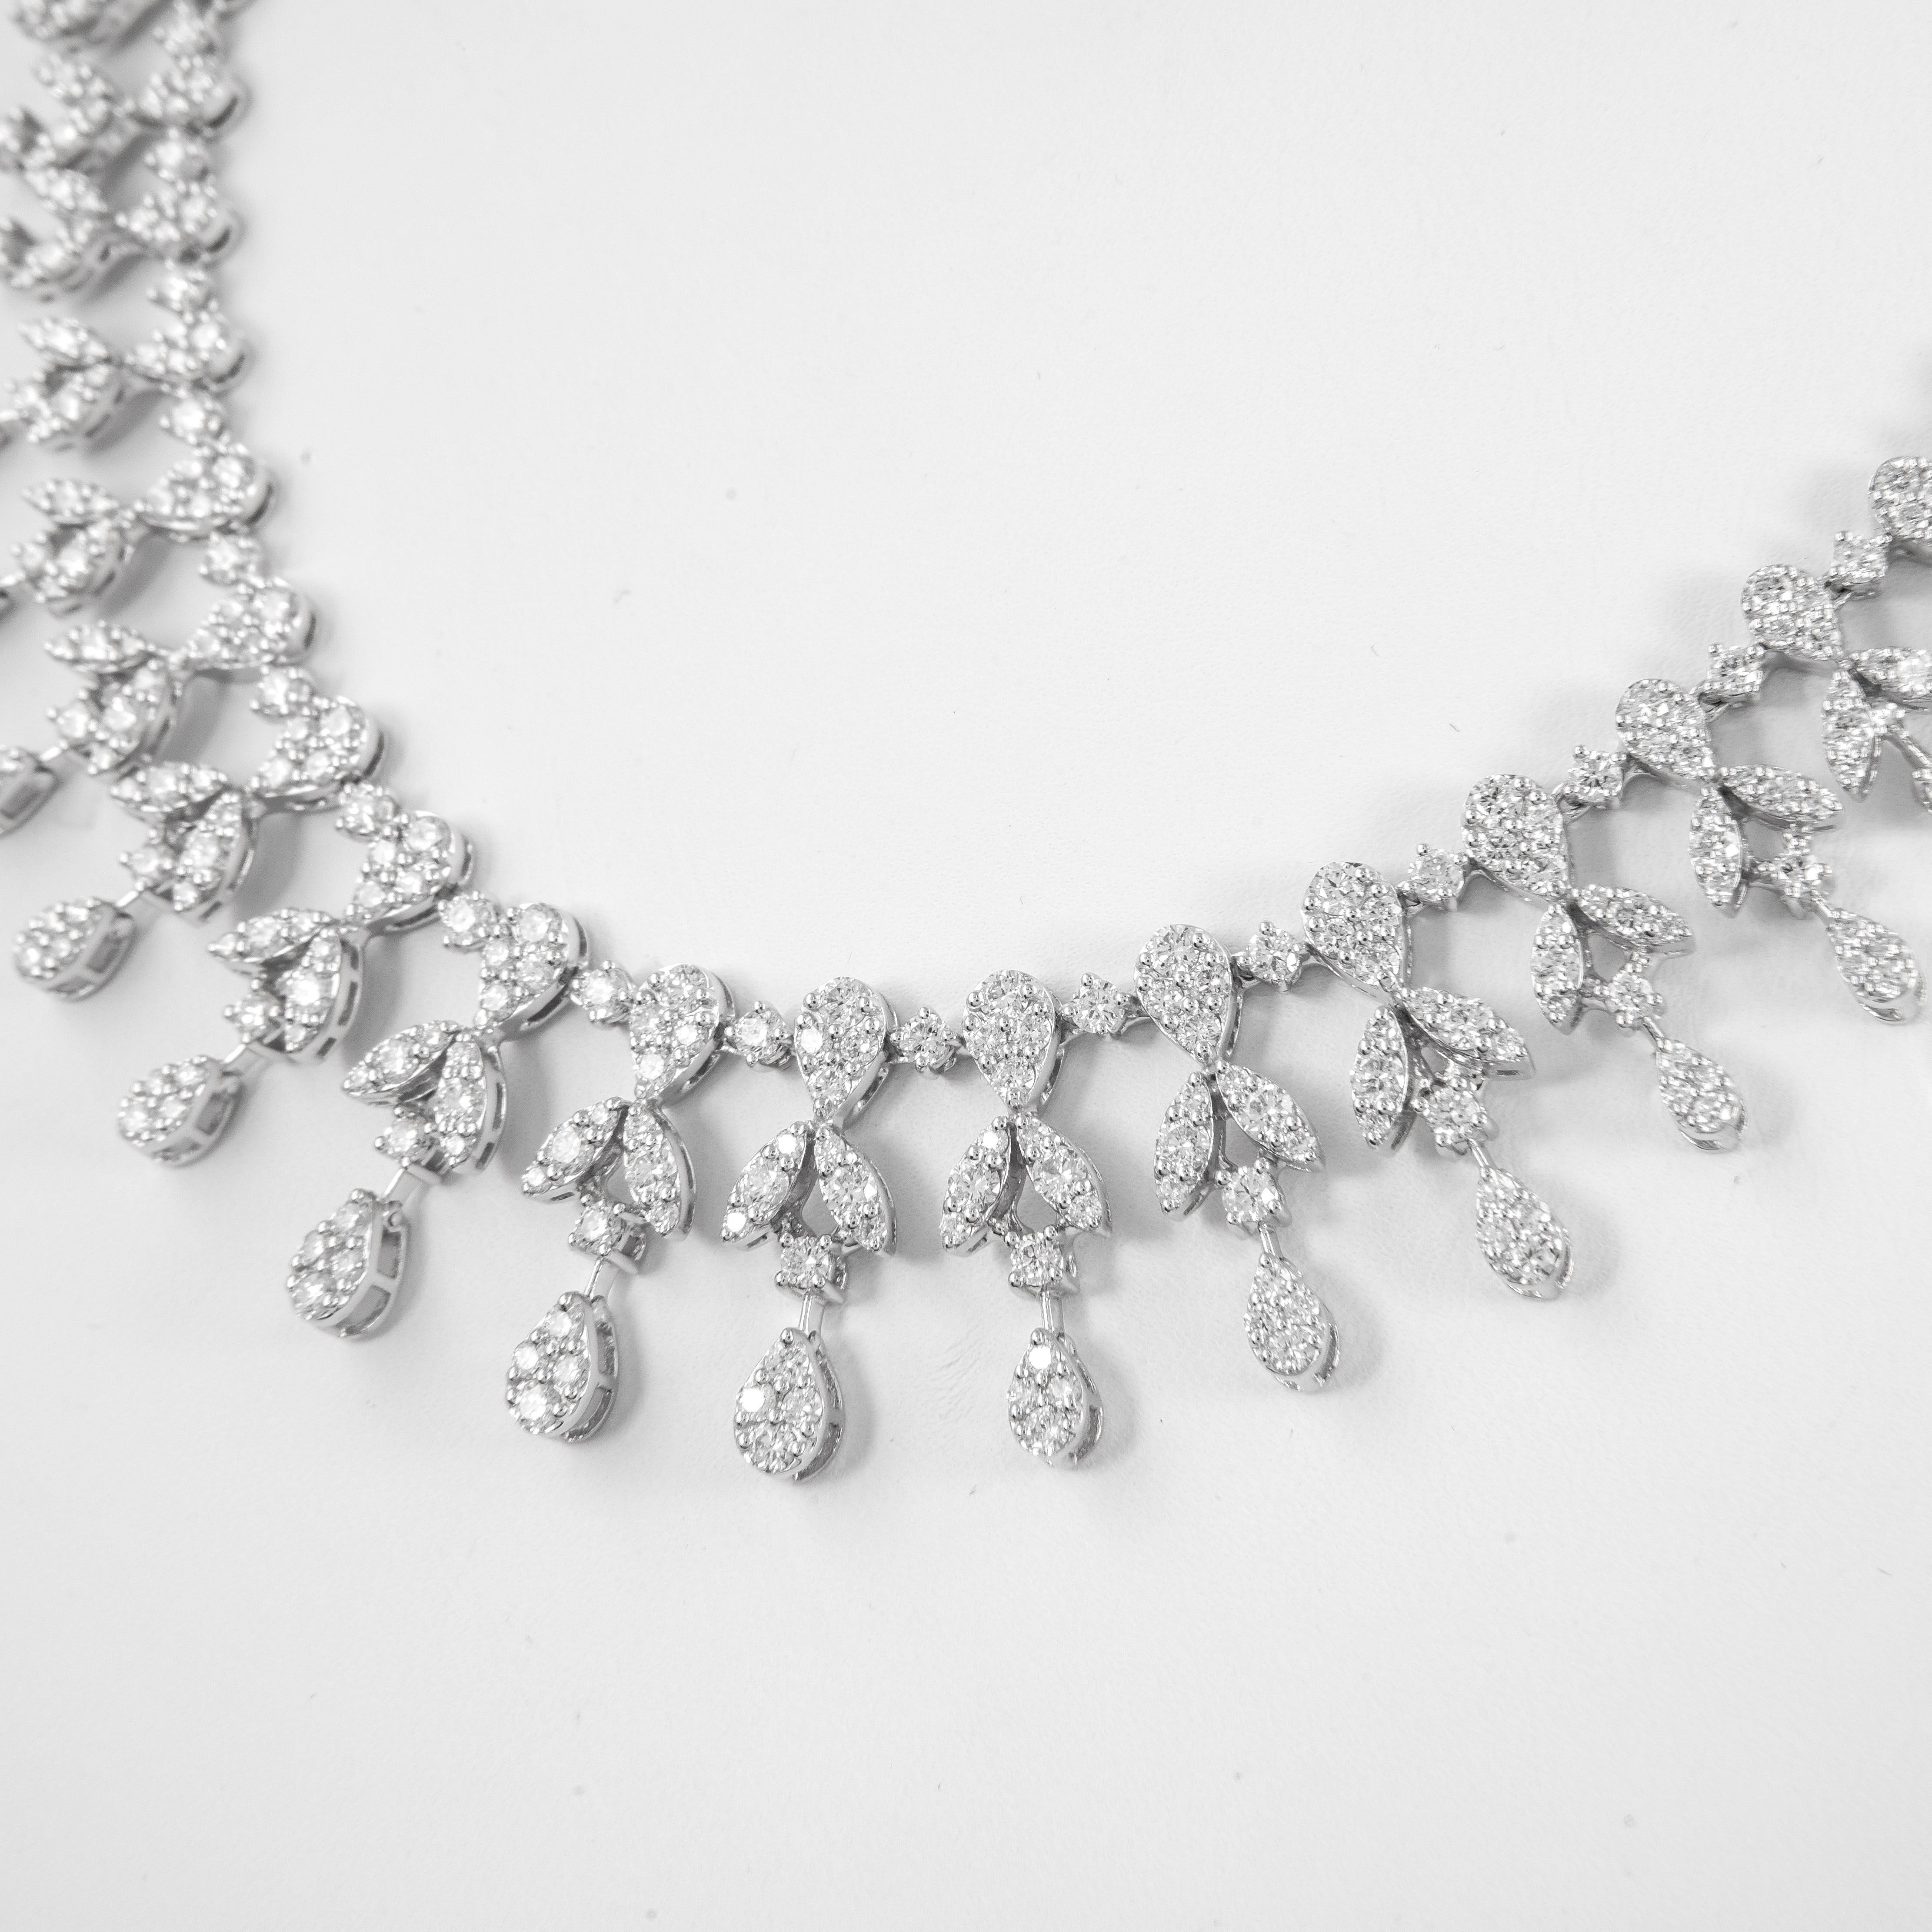 Exquisite große Multi-Diamant-Halskette. 
341 runde Brillanten, 7,57 Karat. Ungefähr H/I Farbe und VS2/SI1 Klarheit. 18 Karat Weißgold, 36,22 Gramm, 17 Zoll.
Mit einer aktuellen Bewertung durch ein GIA G.G. beim Kauf untergebracht, kontaktieren Sie